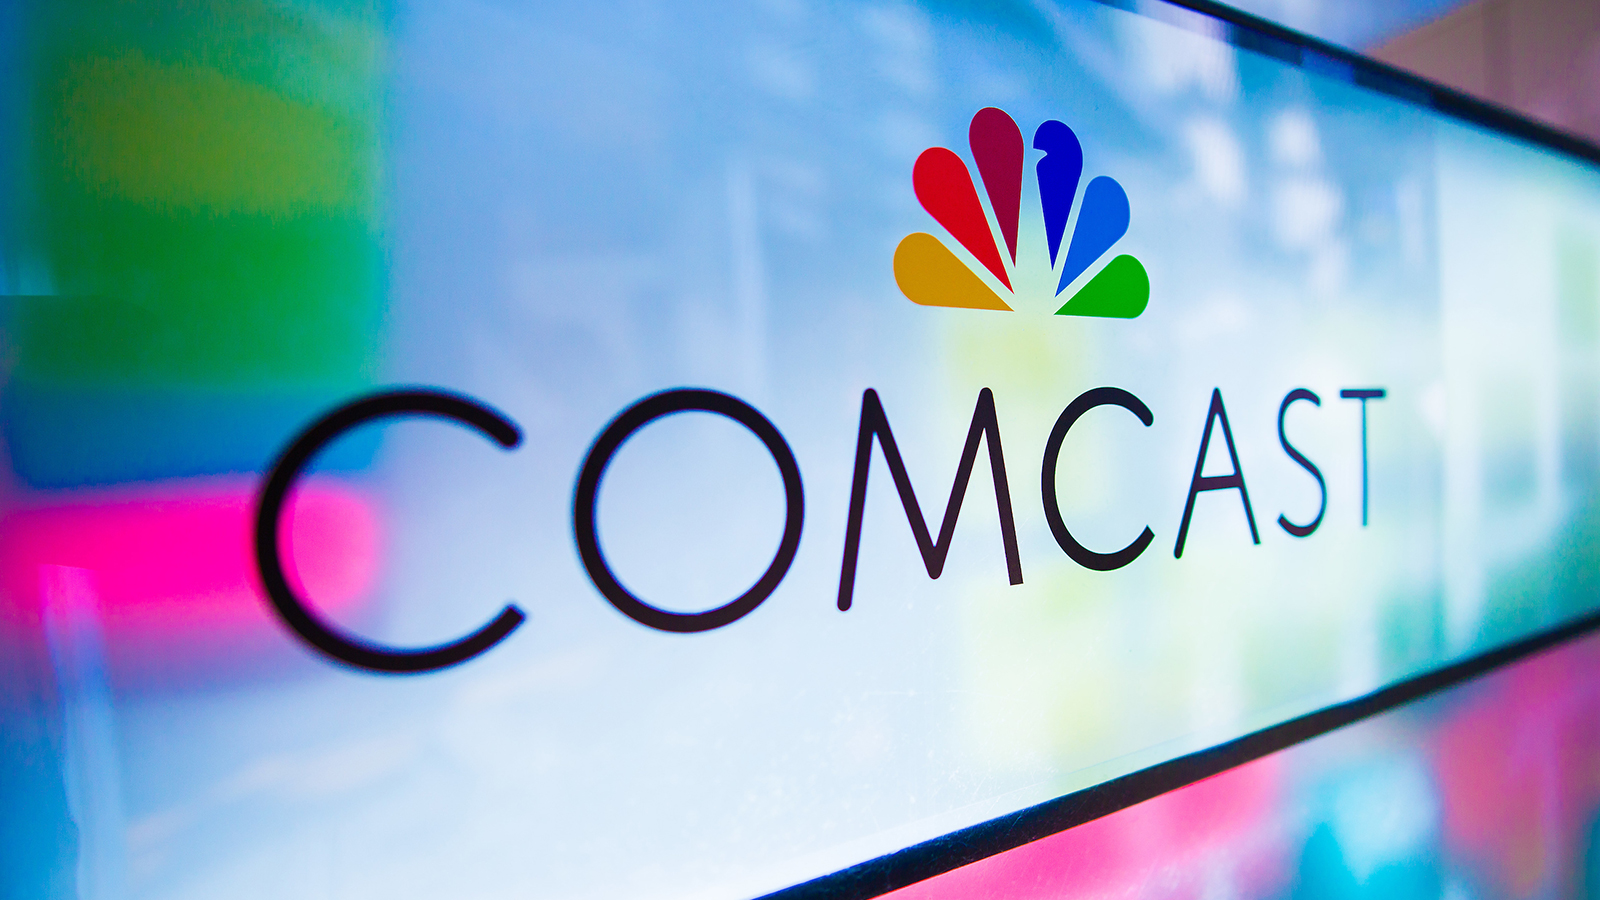 The Comcast logo